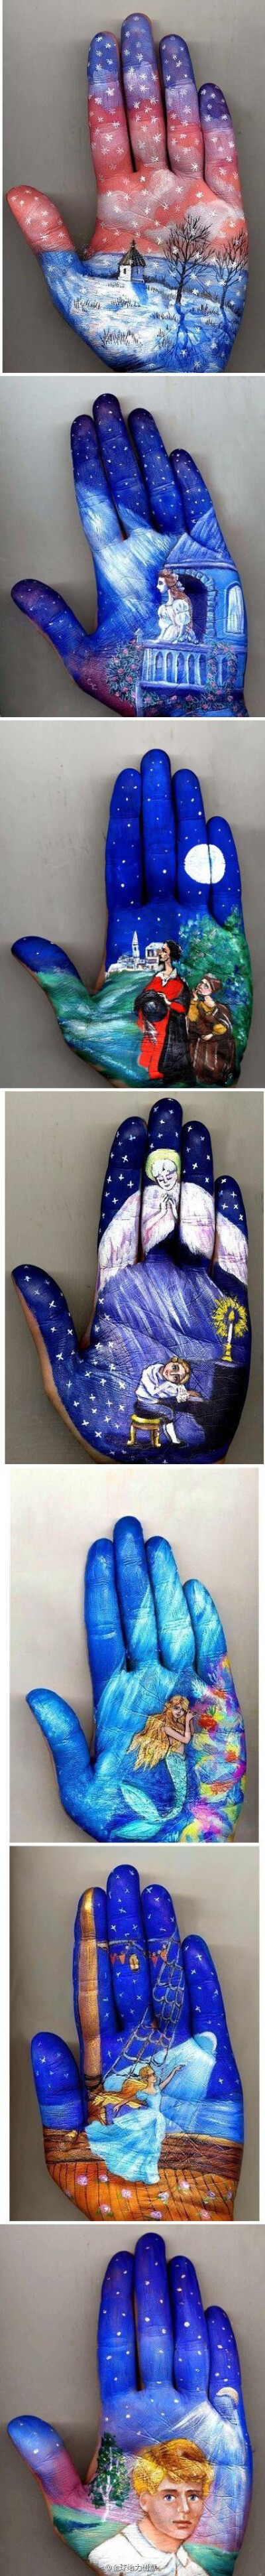 【掌心上的童话艺术】俄罗斯艺术家 Svetlana Kolosova 在自己的手掌上画出了温暖的童话。